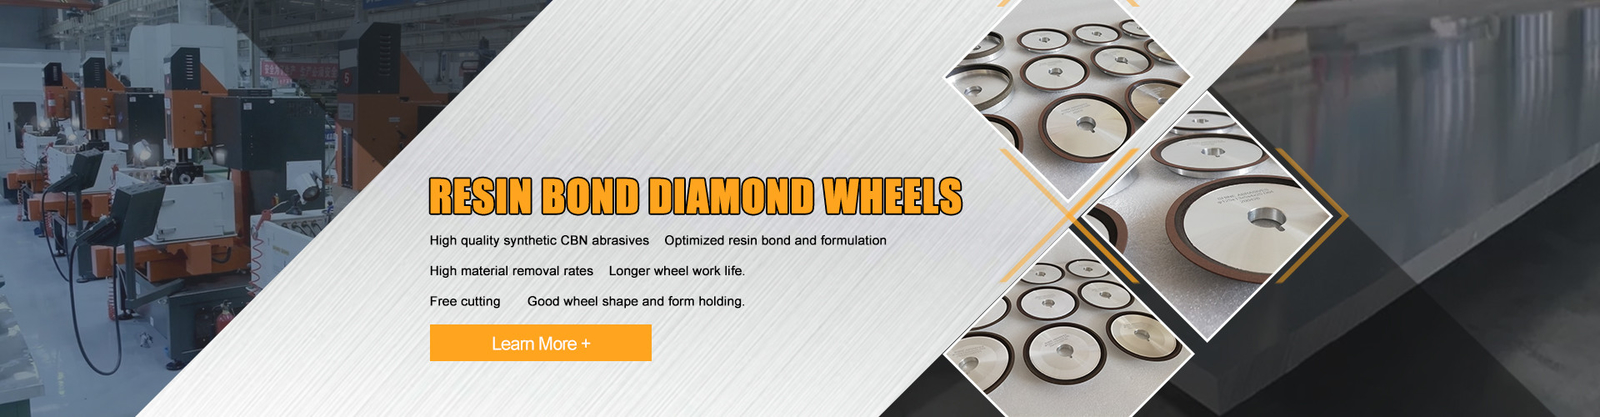 Ligação Diamond Wheels da resina